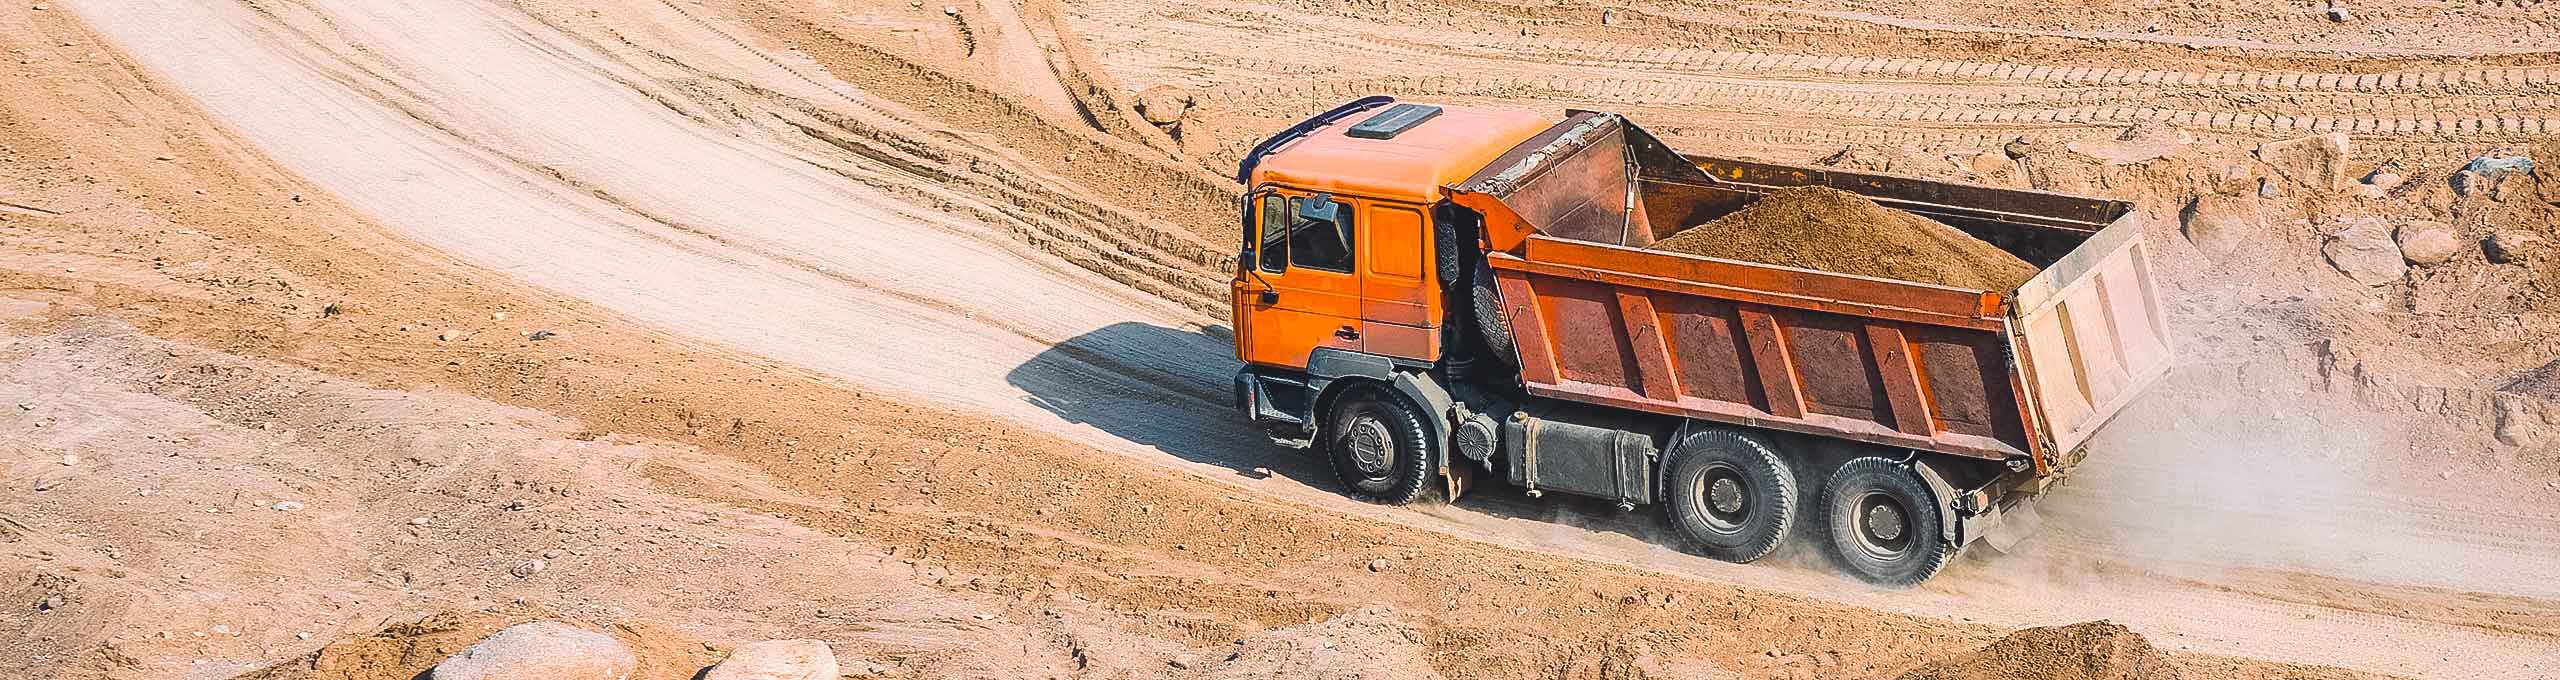 Um caminhão basculante laranja cheio de sujeira passando por uma estrada suja.